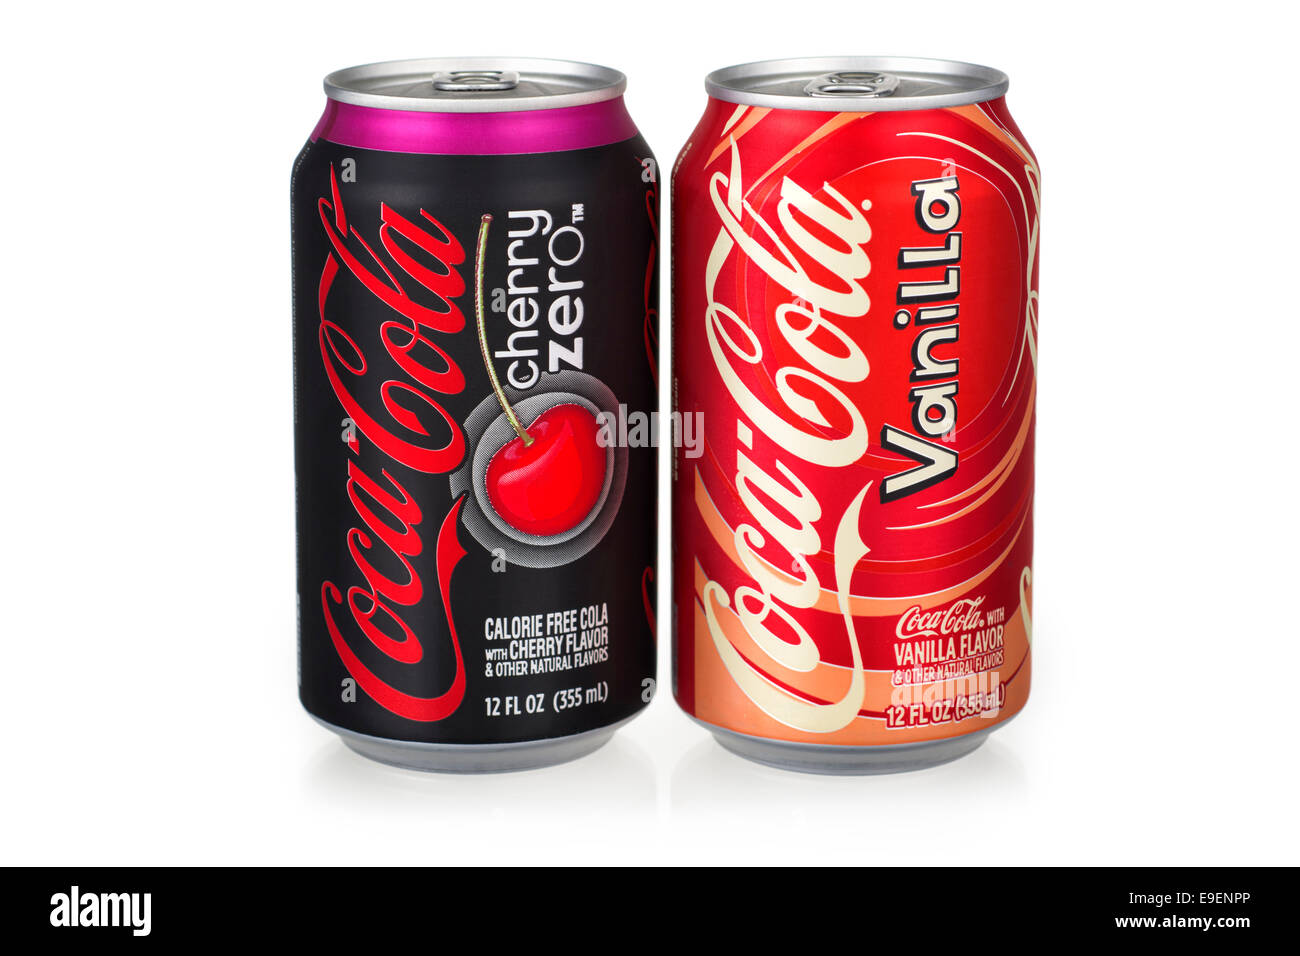 Coca cola vaniglia immagini e fotografie stock ad alta risoluzione - Alamy